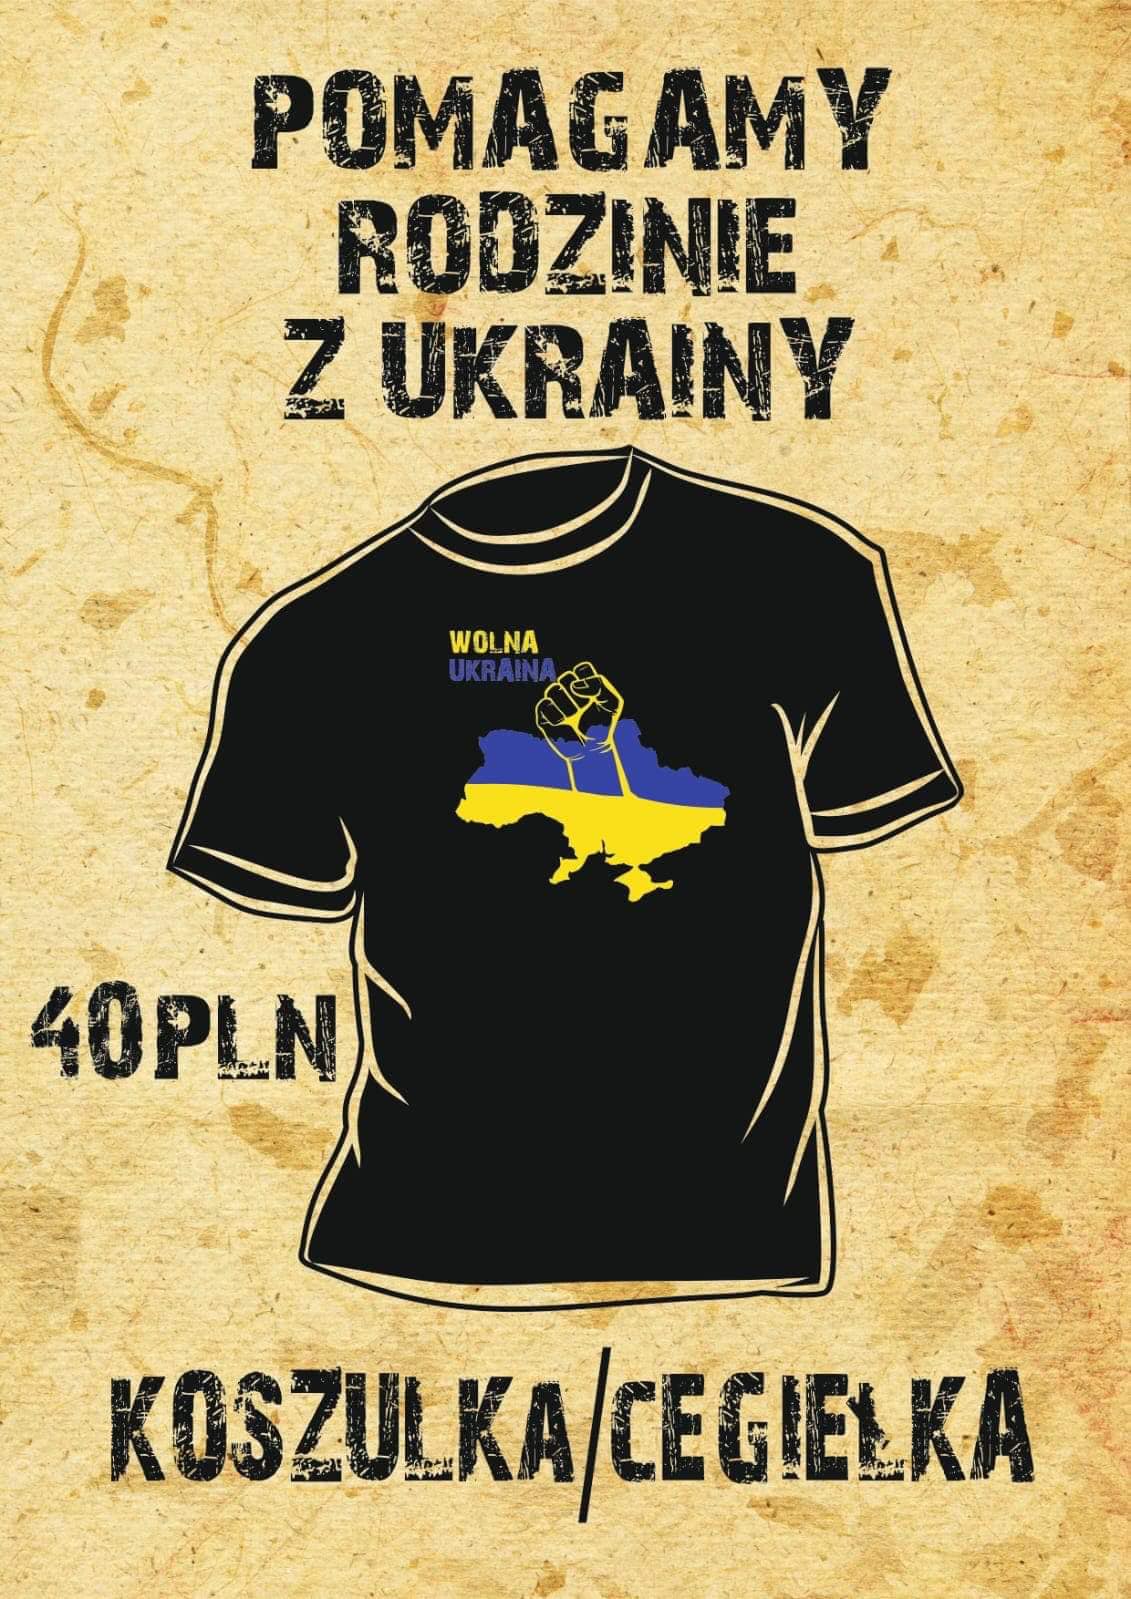 Wolna Ukraina!